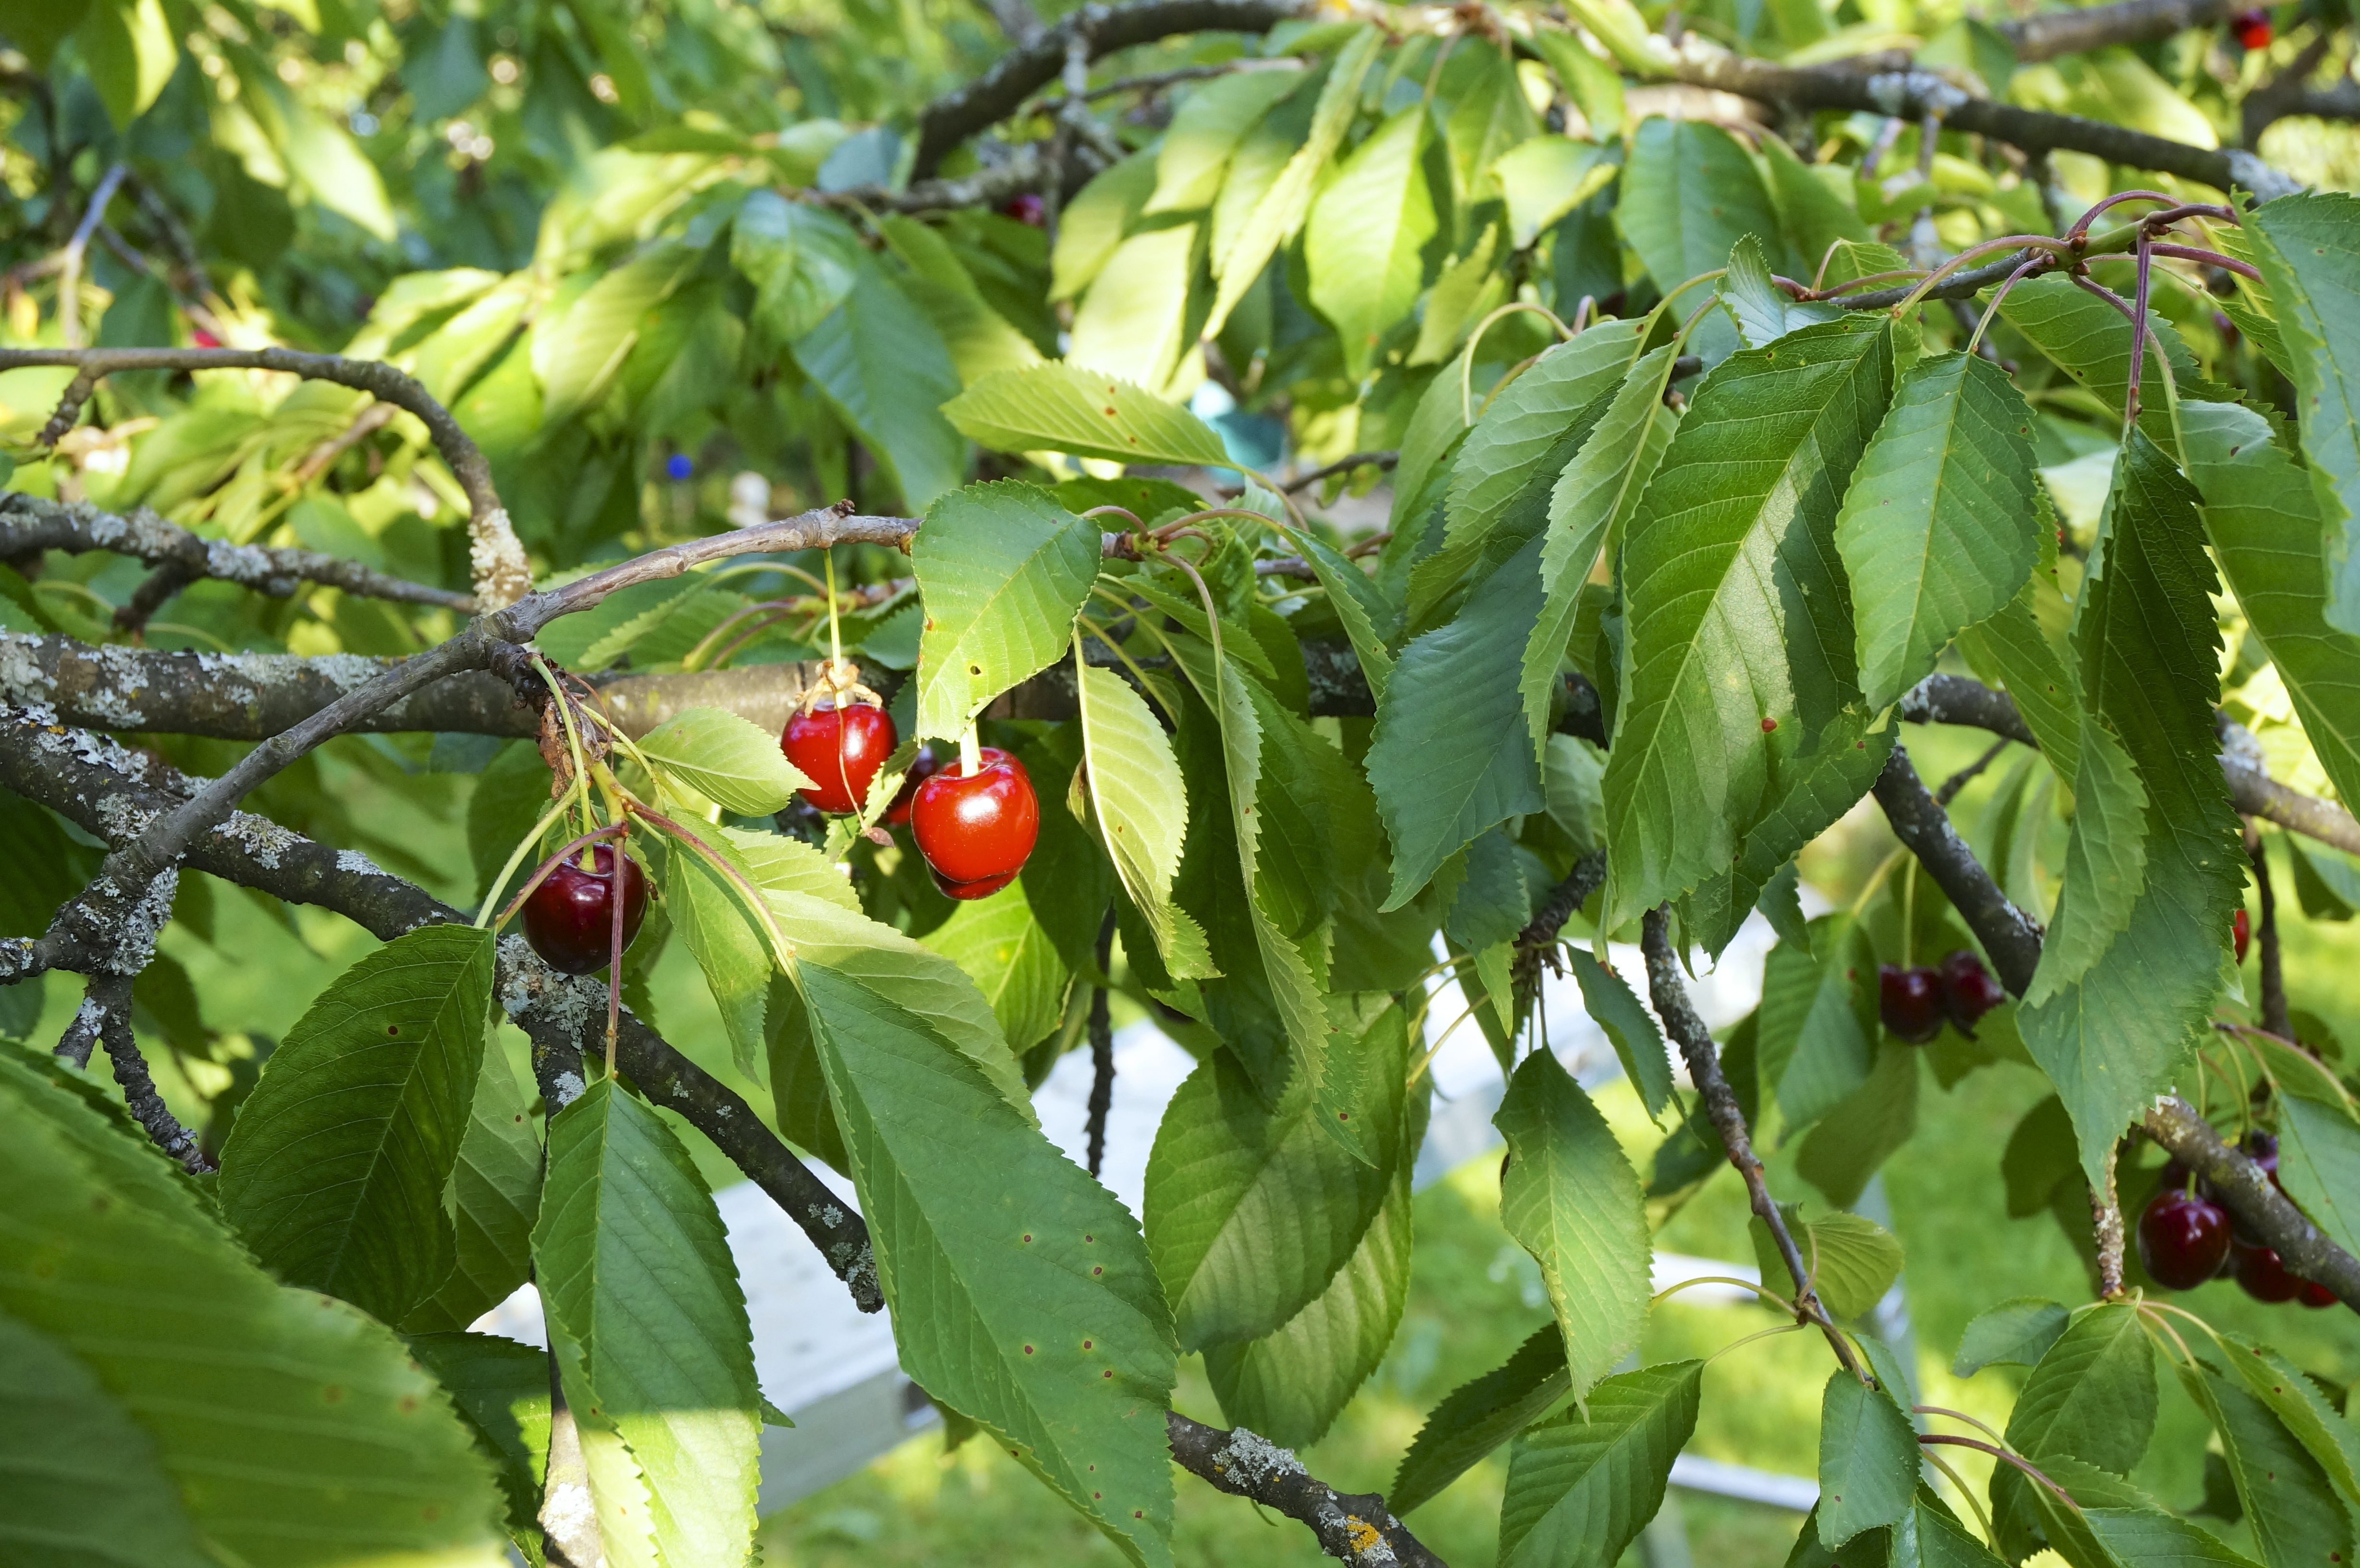 Ripe fruit, cherries